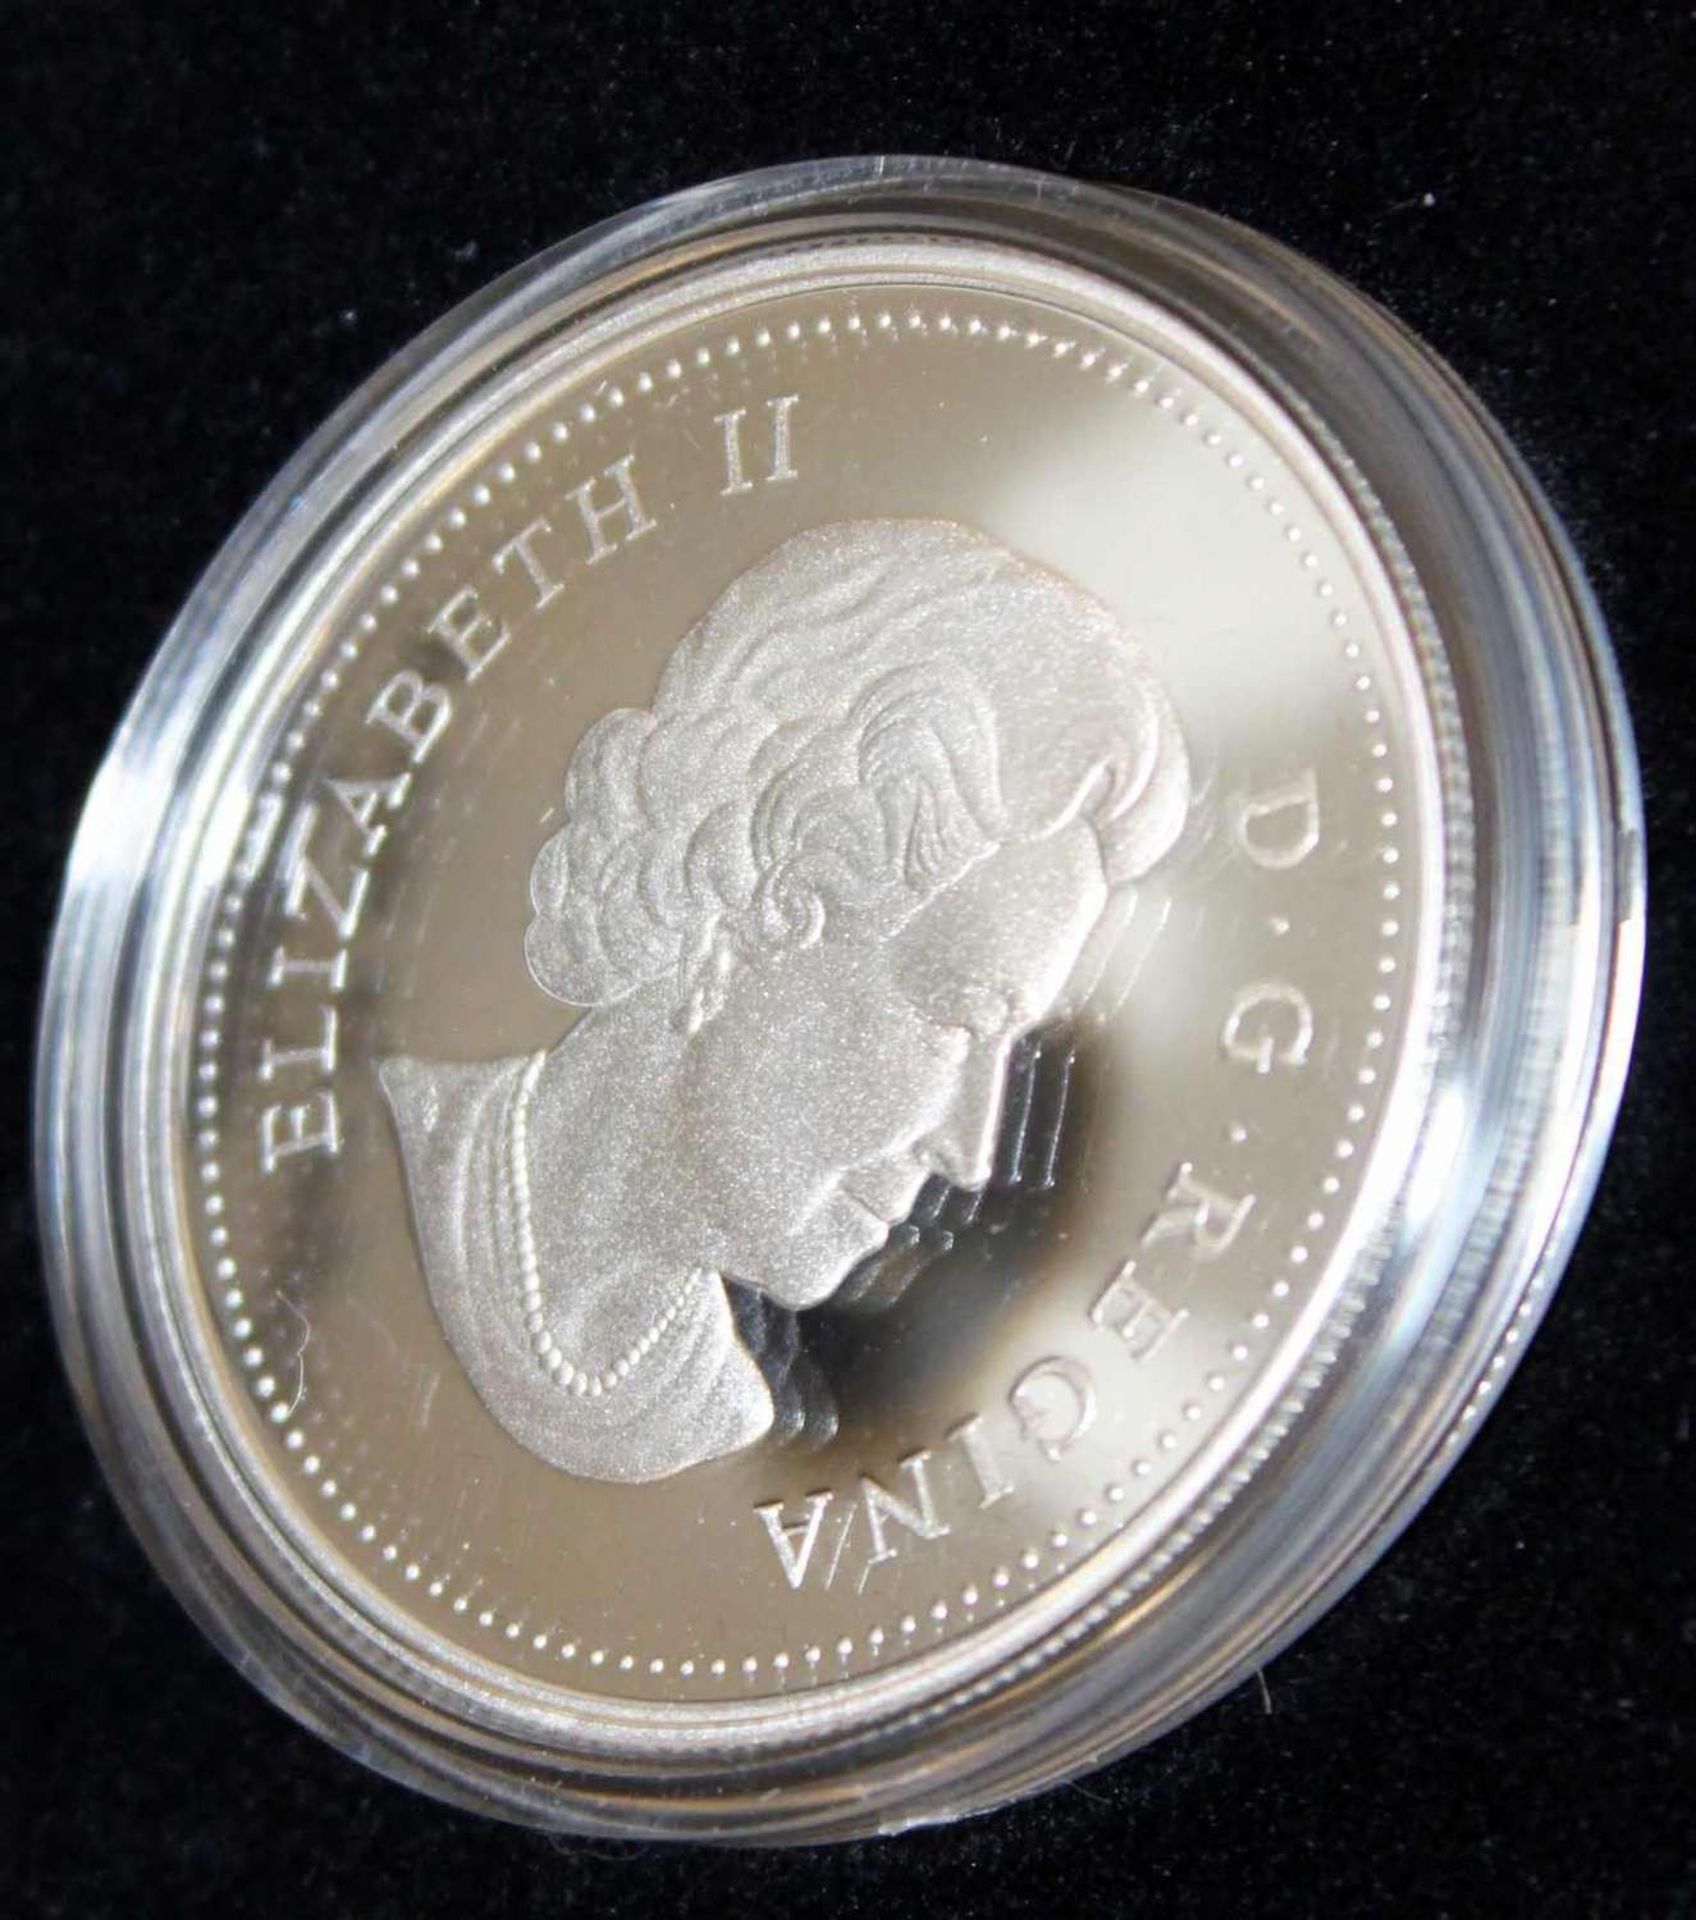 Canada Dollar 2010, 100 Jahre Marine in Canada, Proof Silver Dollar im Etui Canada Dollar 2010, - Bild 2 aus 2